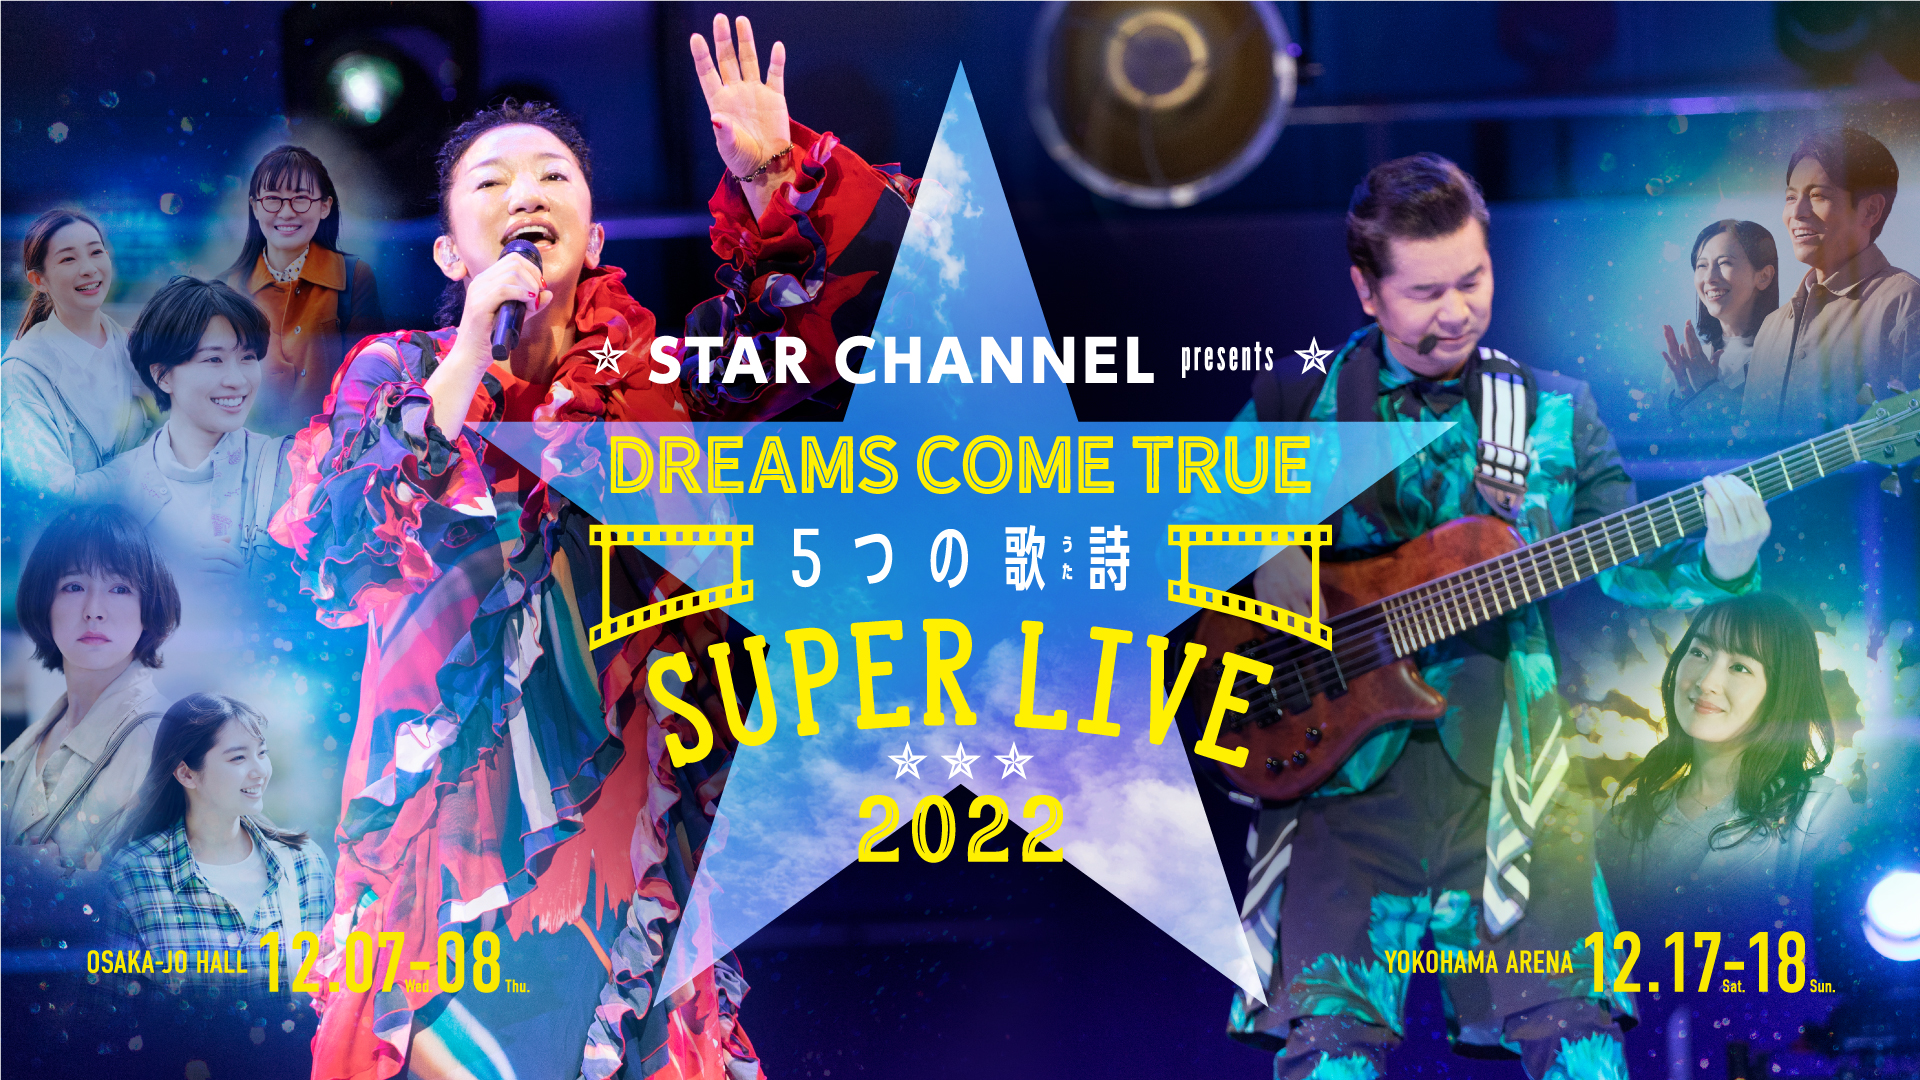 STAR CHANNEL presents DREAMS COME TRUE 5つの歌詩(うた) SUPER LIVE